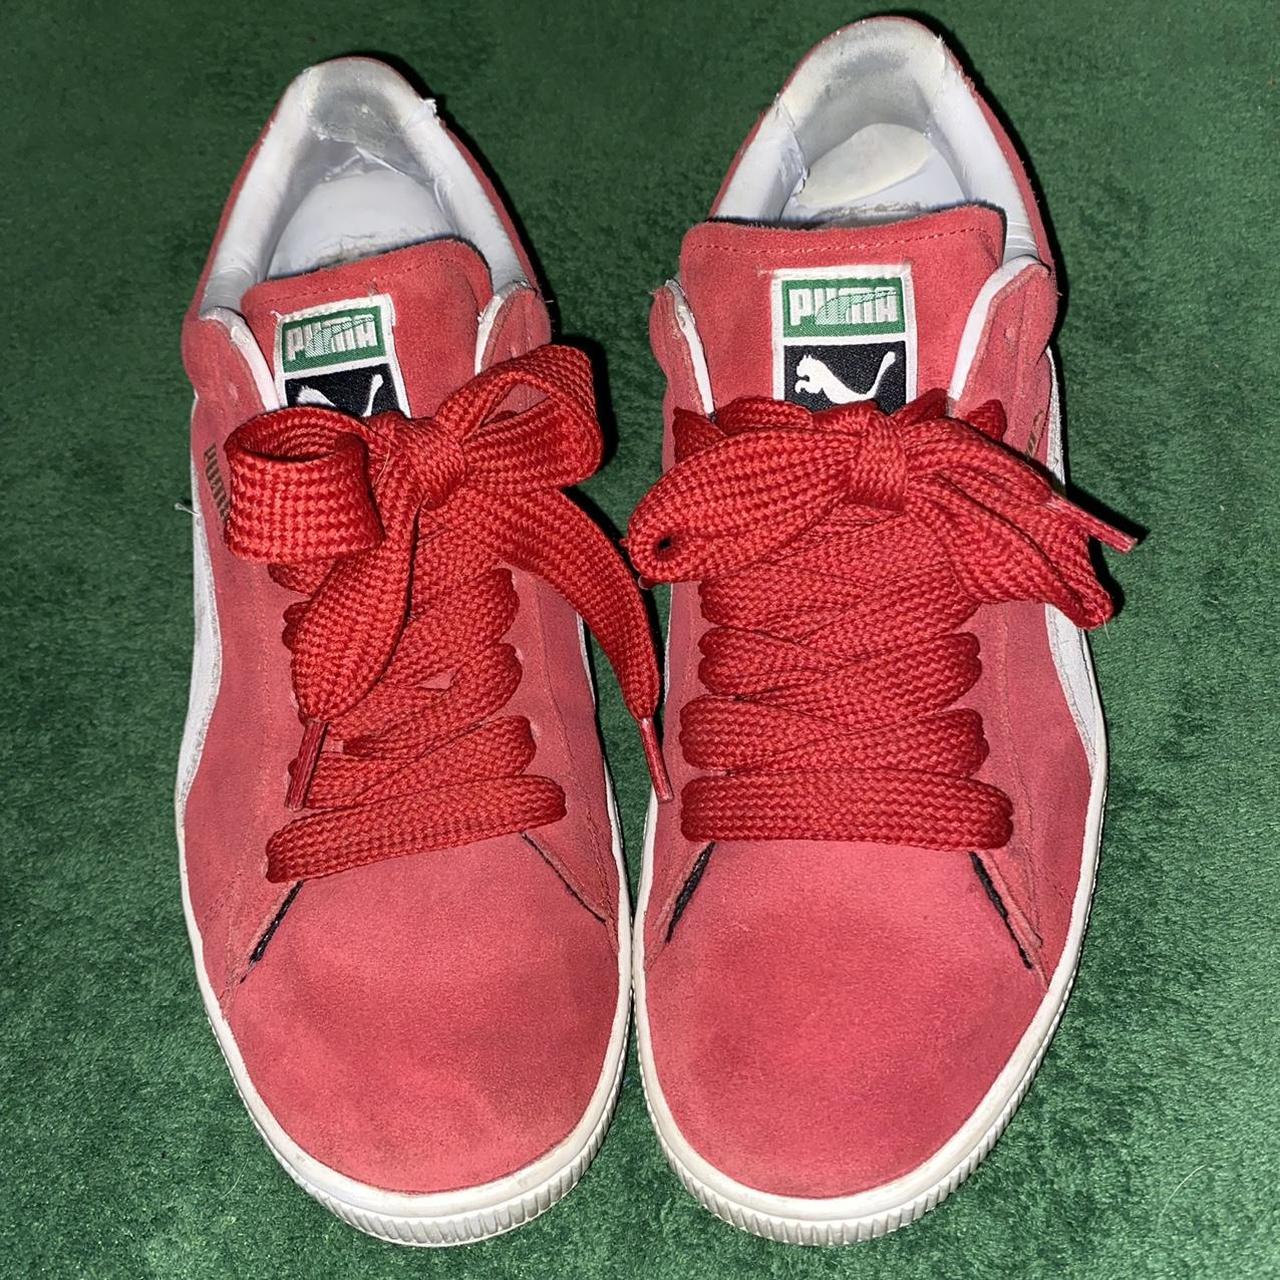 Super clean red Puma skate shoes. Super nice... Depop